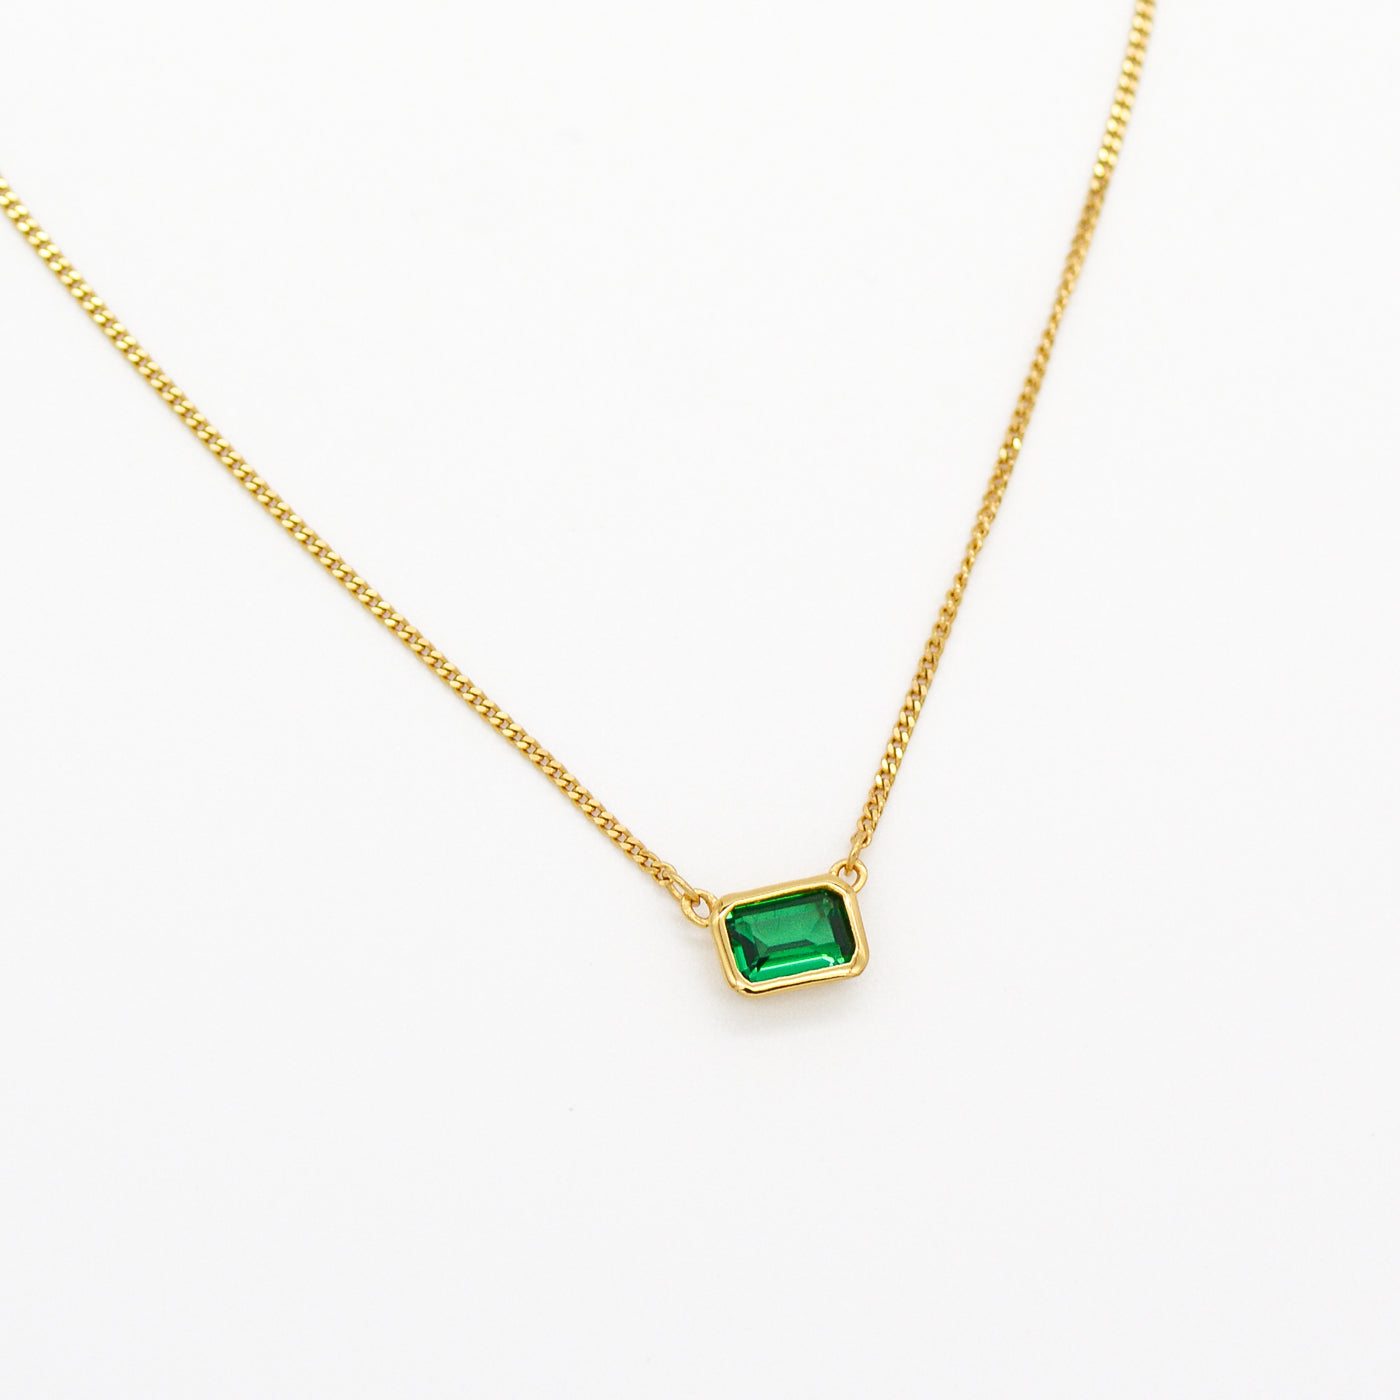 AU79 Vienna Necklace w/ Emerald CZ